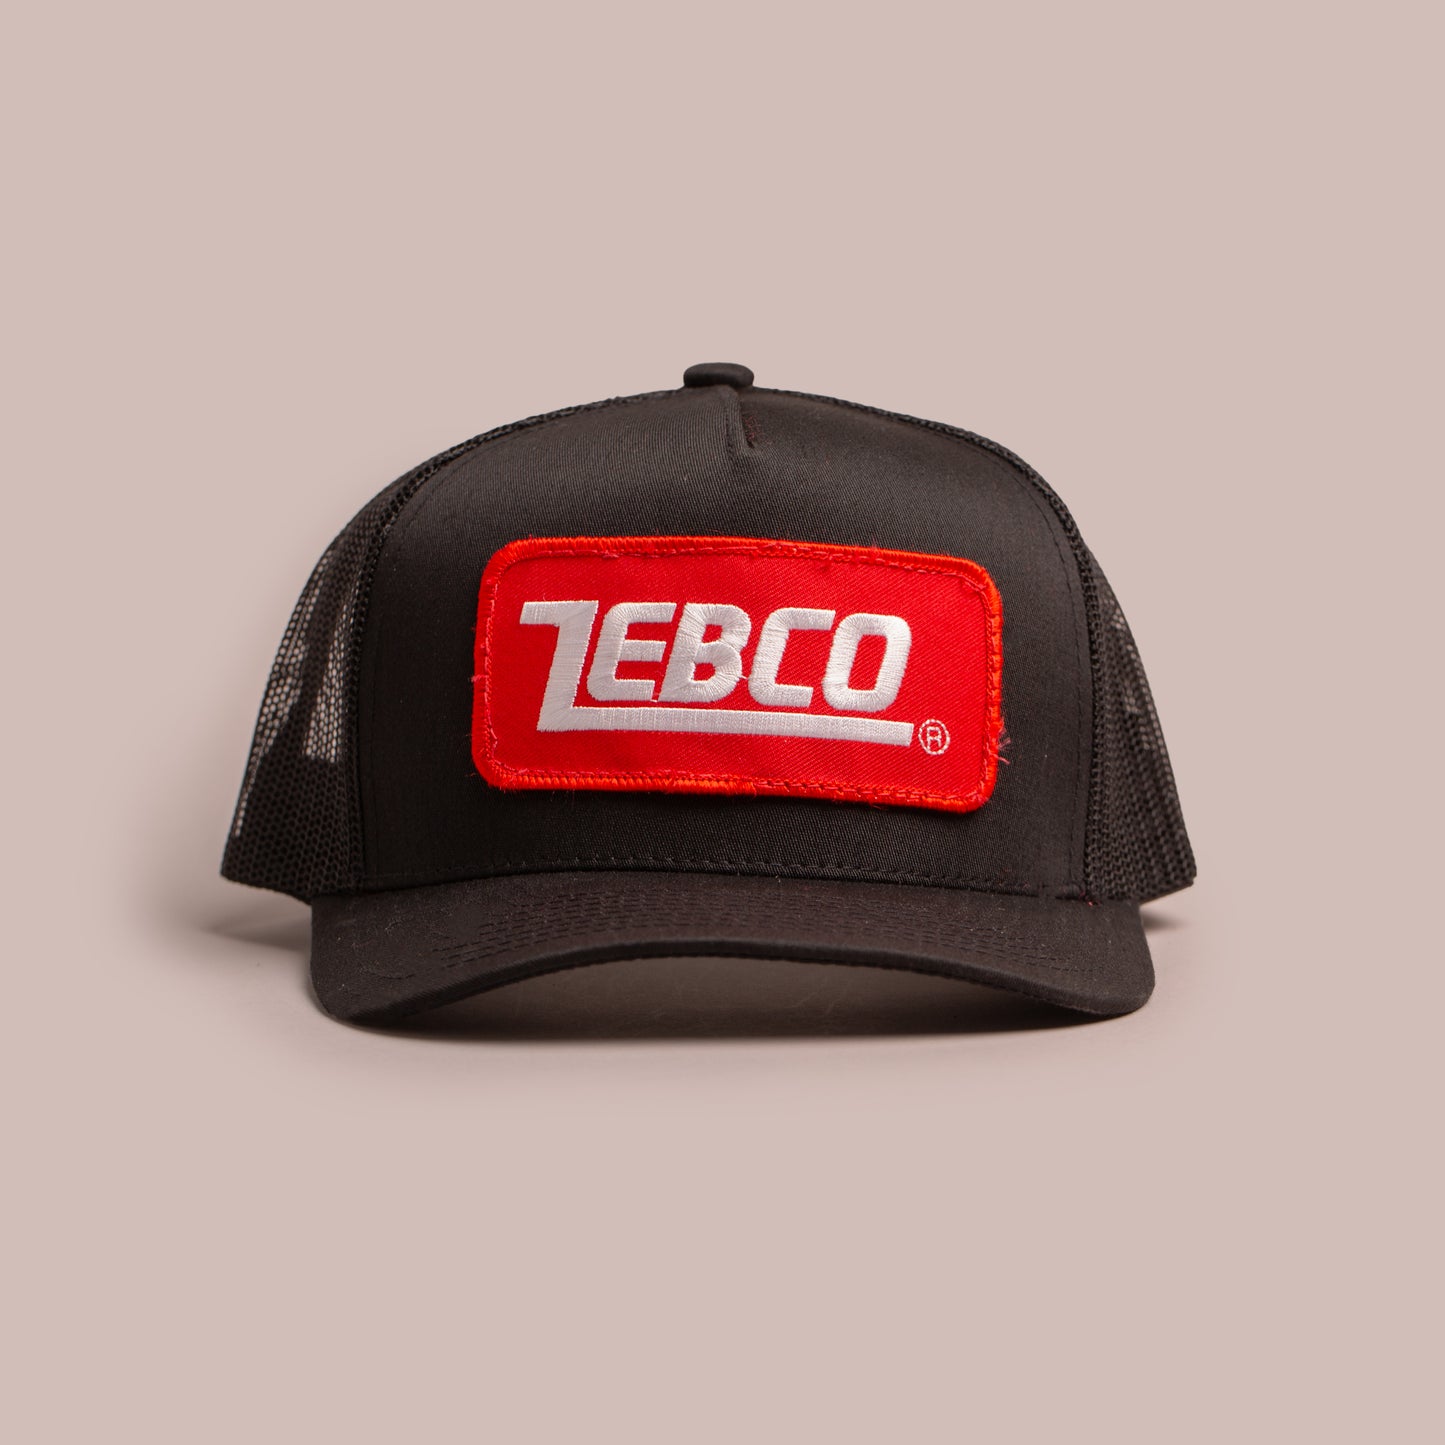 Zebco Black Trucker Cap